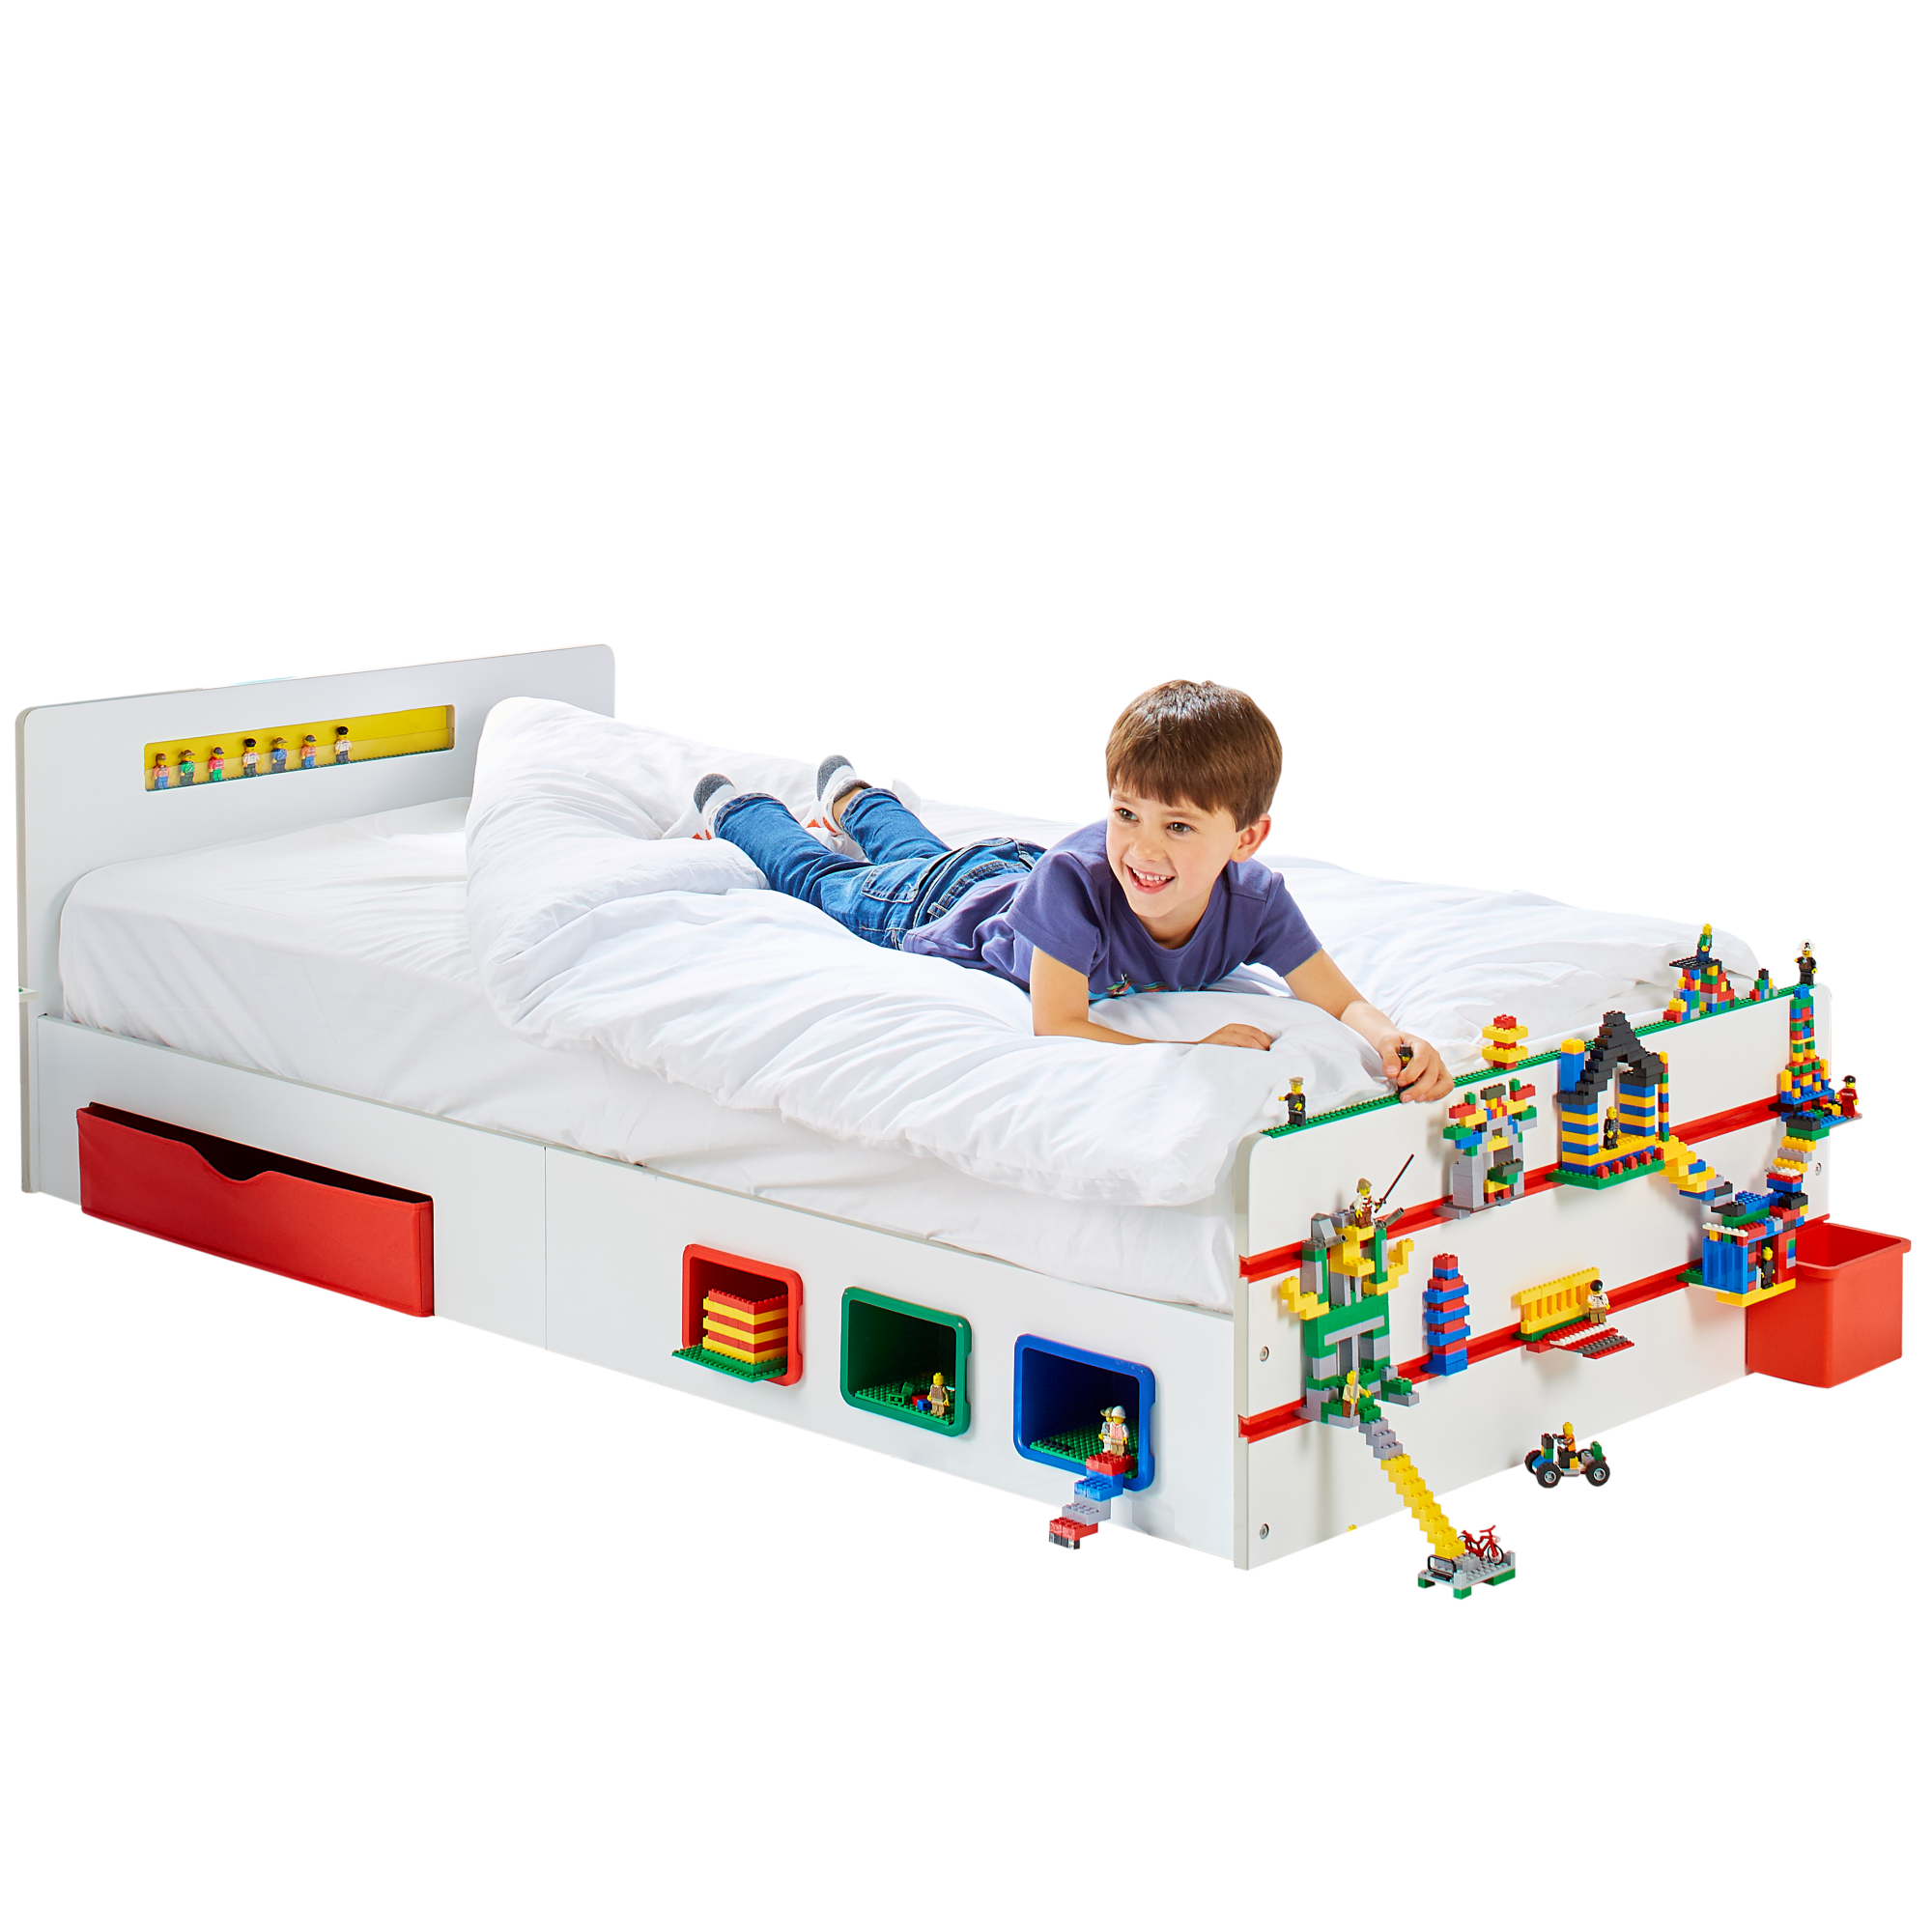 Kinderbett Room 2 Build: Einzelbett Aufbewahrungslösung inkl. Rost 90*200 cm